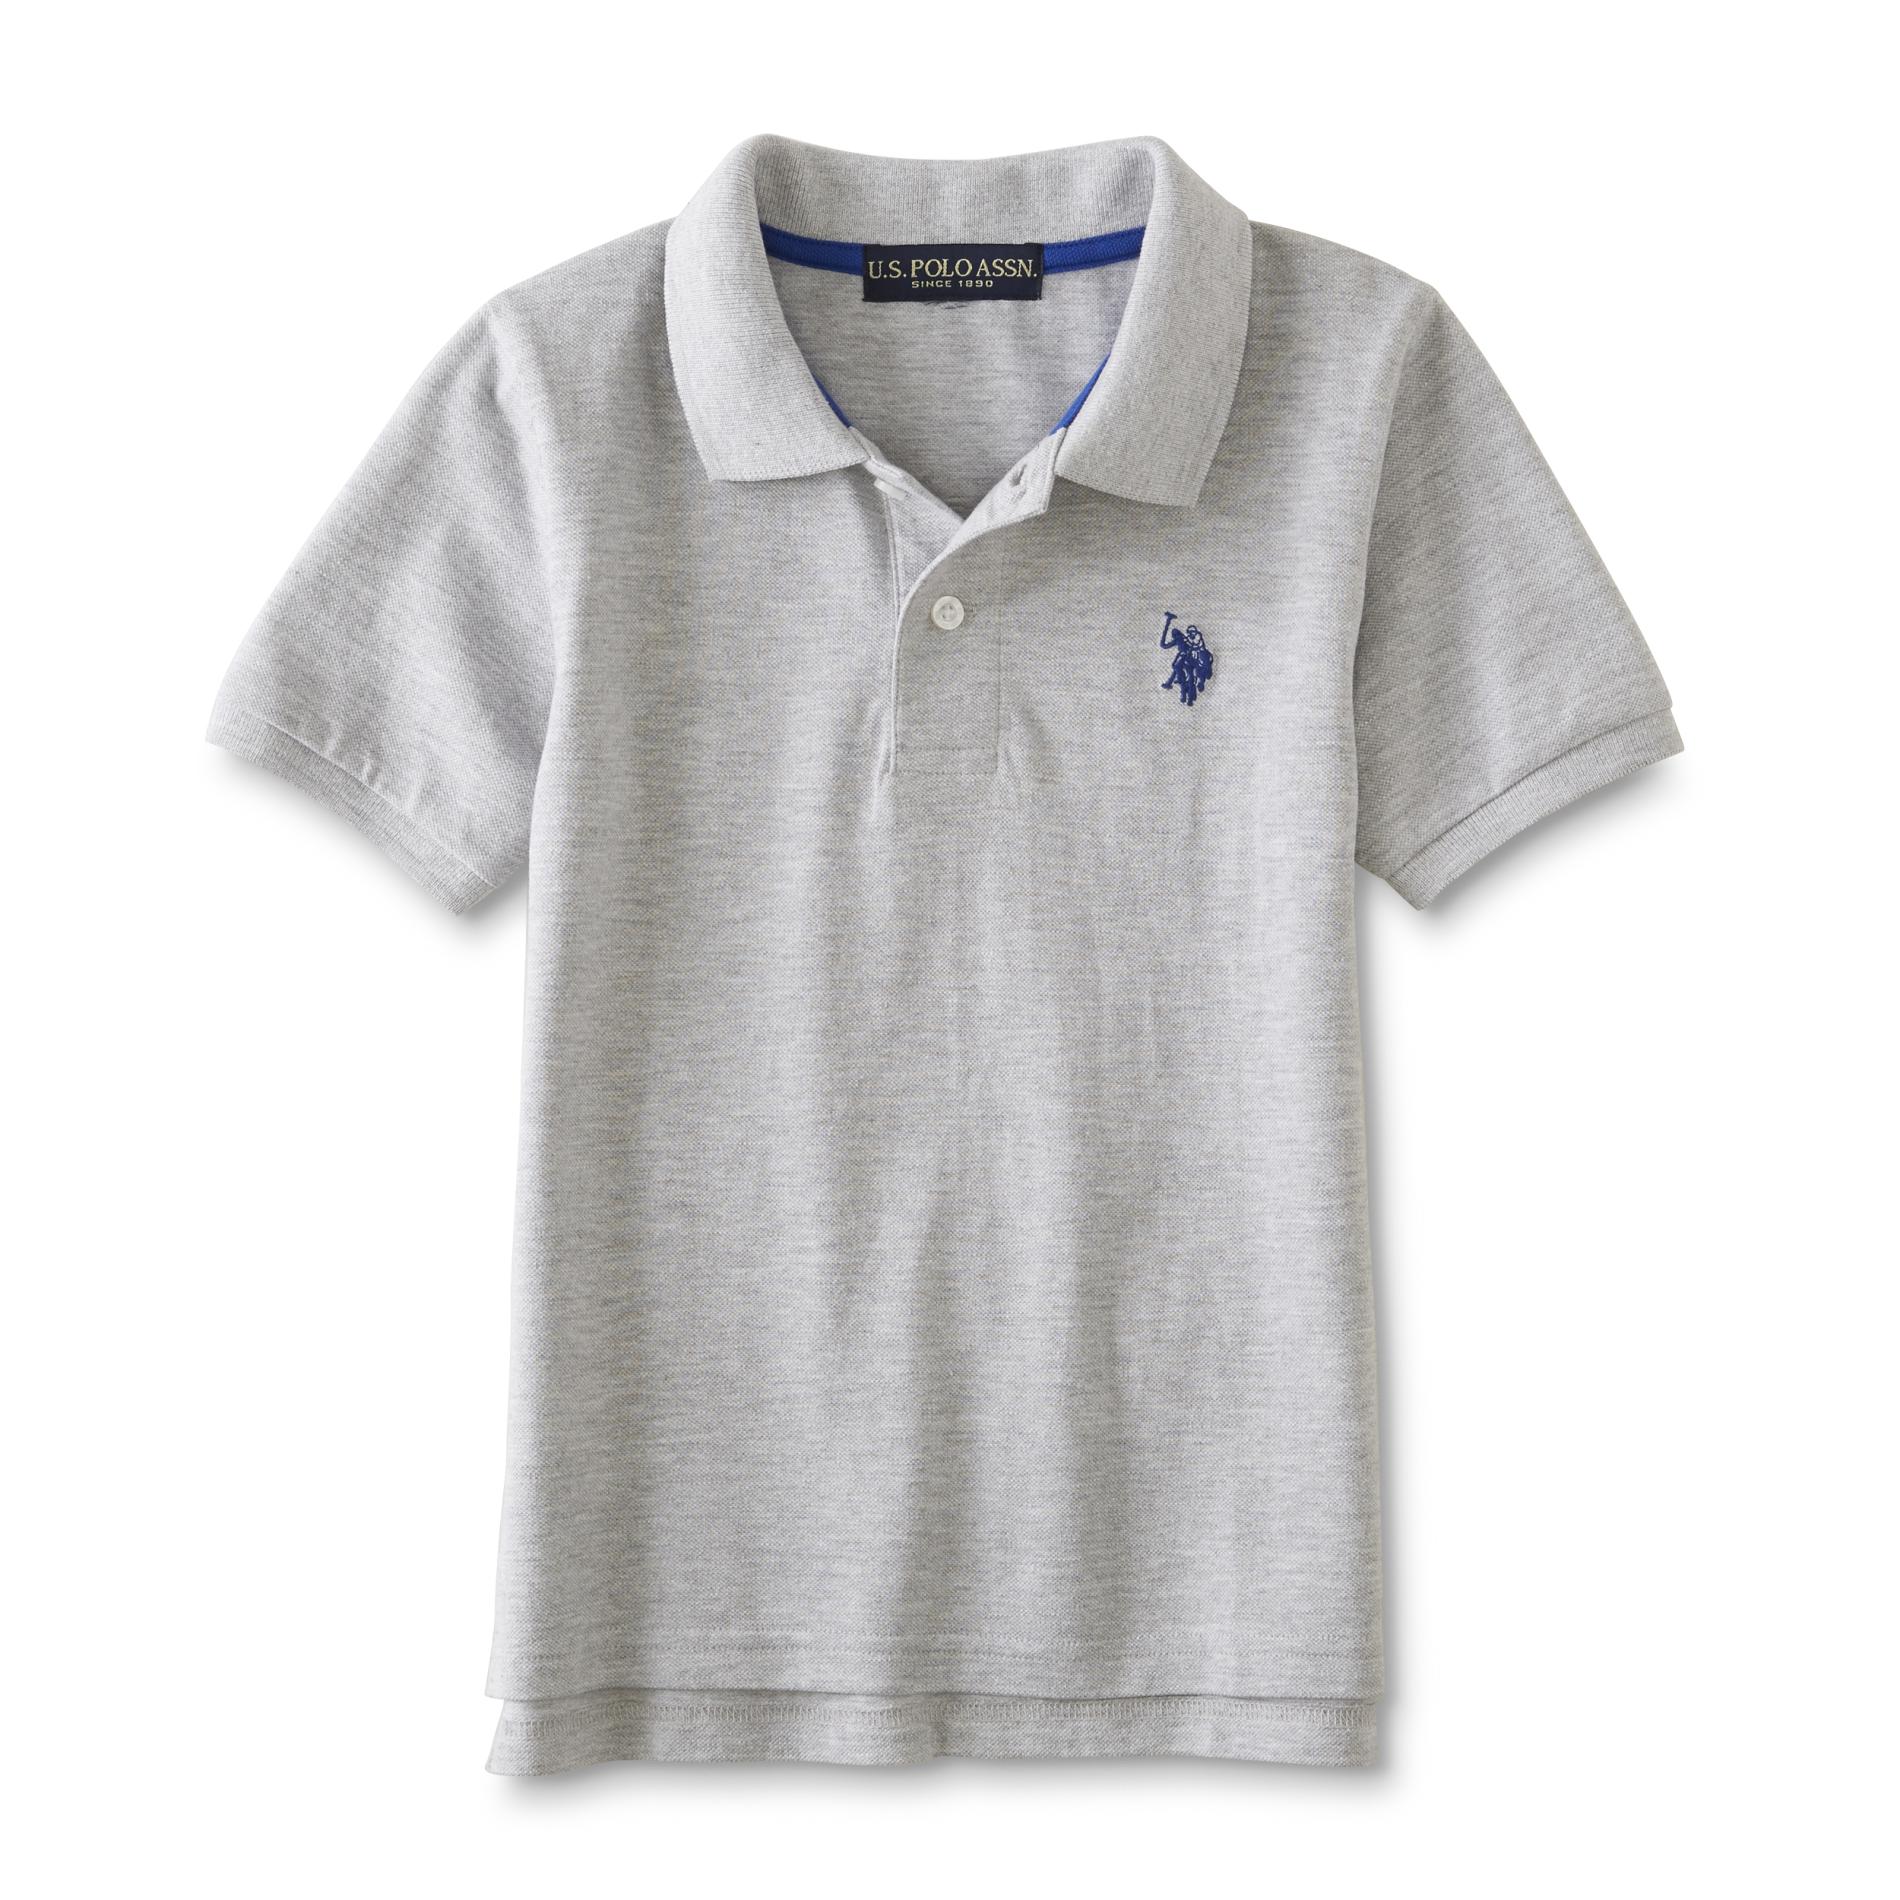 U.S. Polo Assn. Boys' Polo Shirt